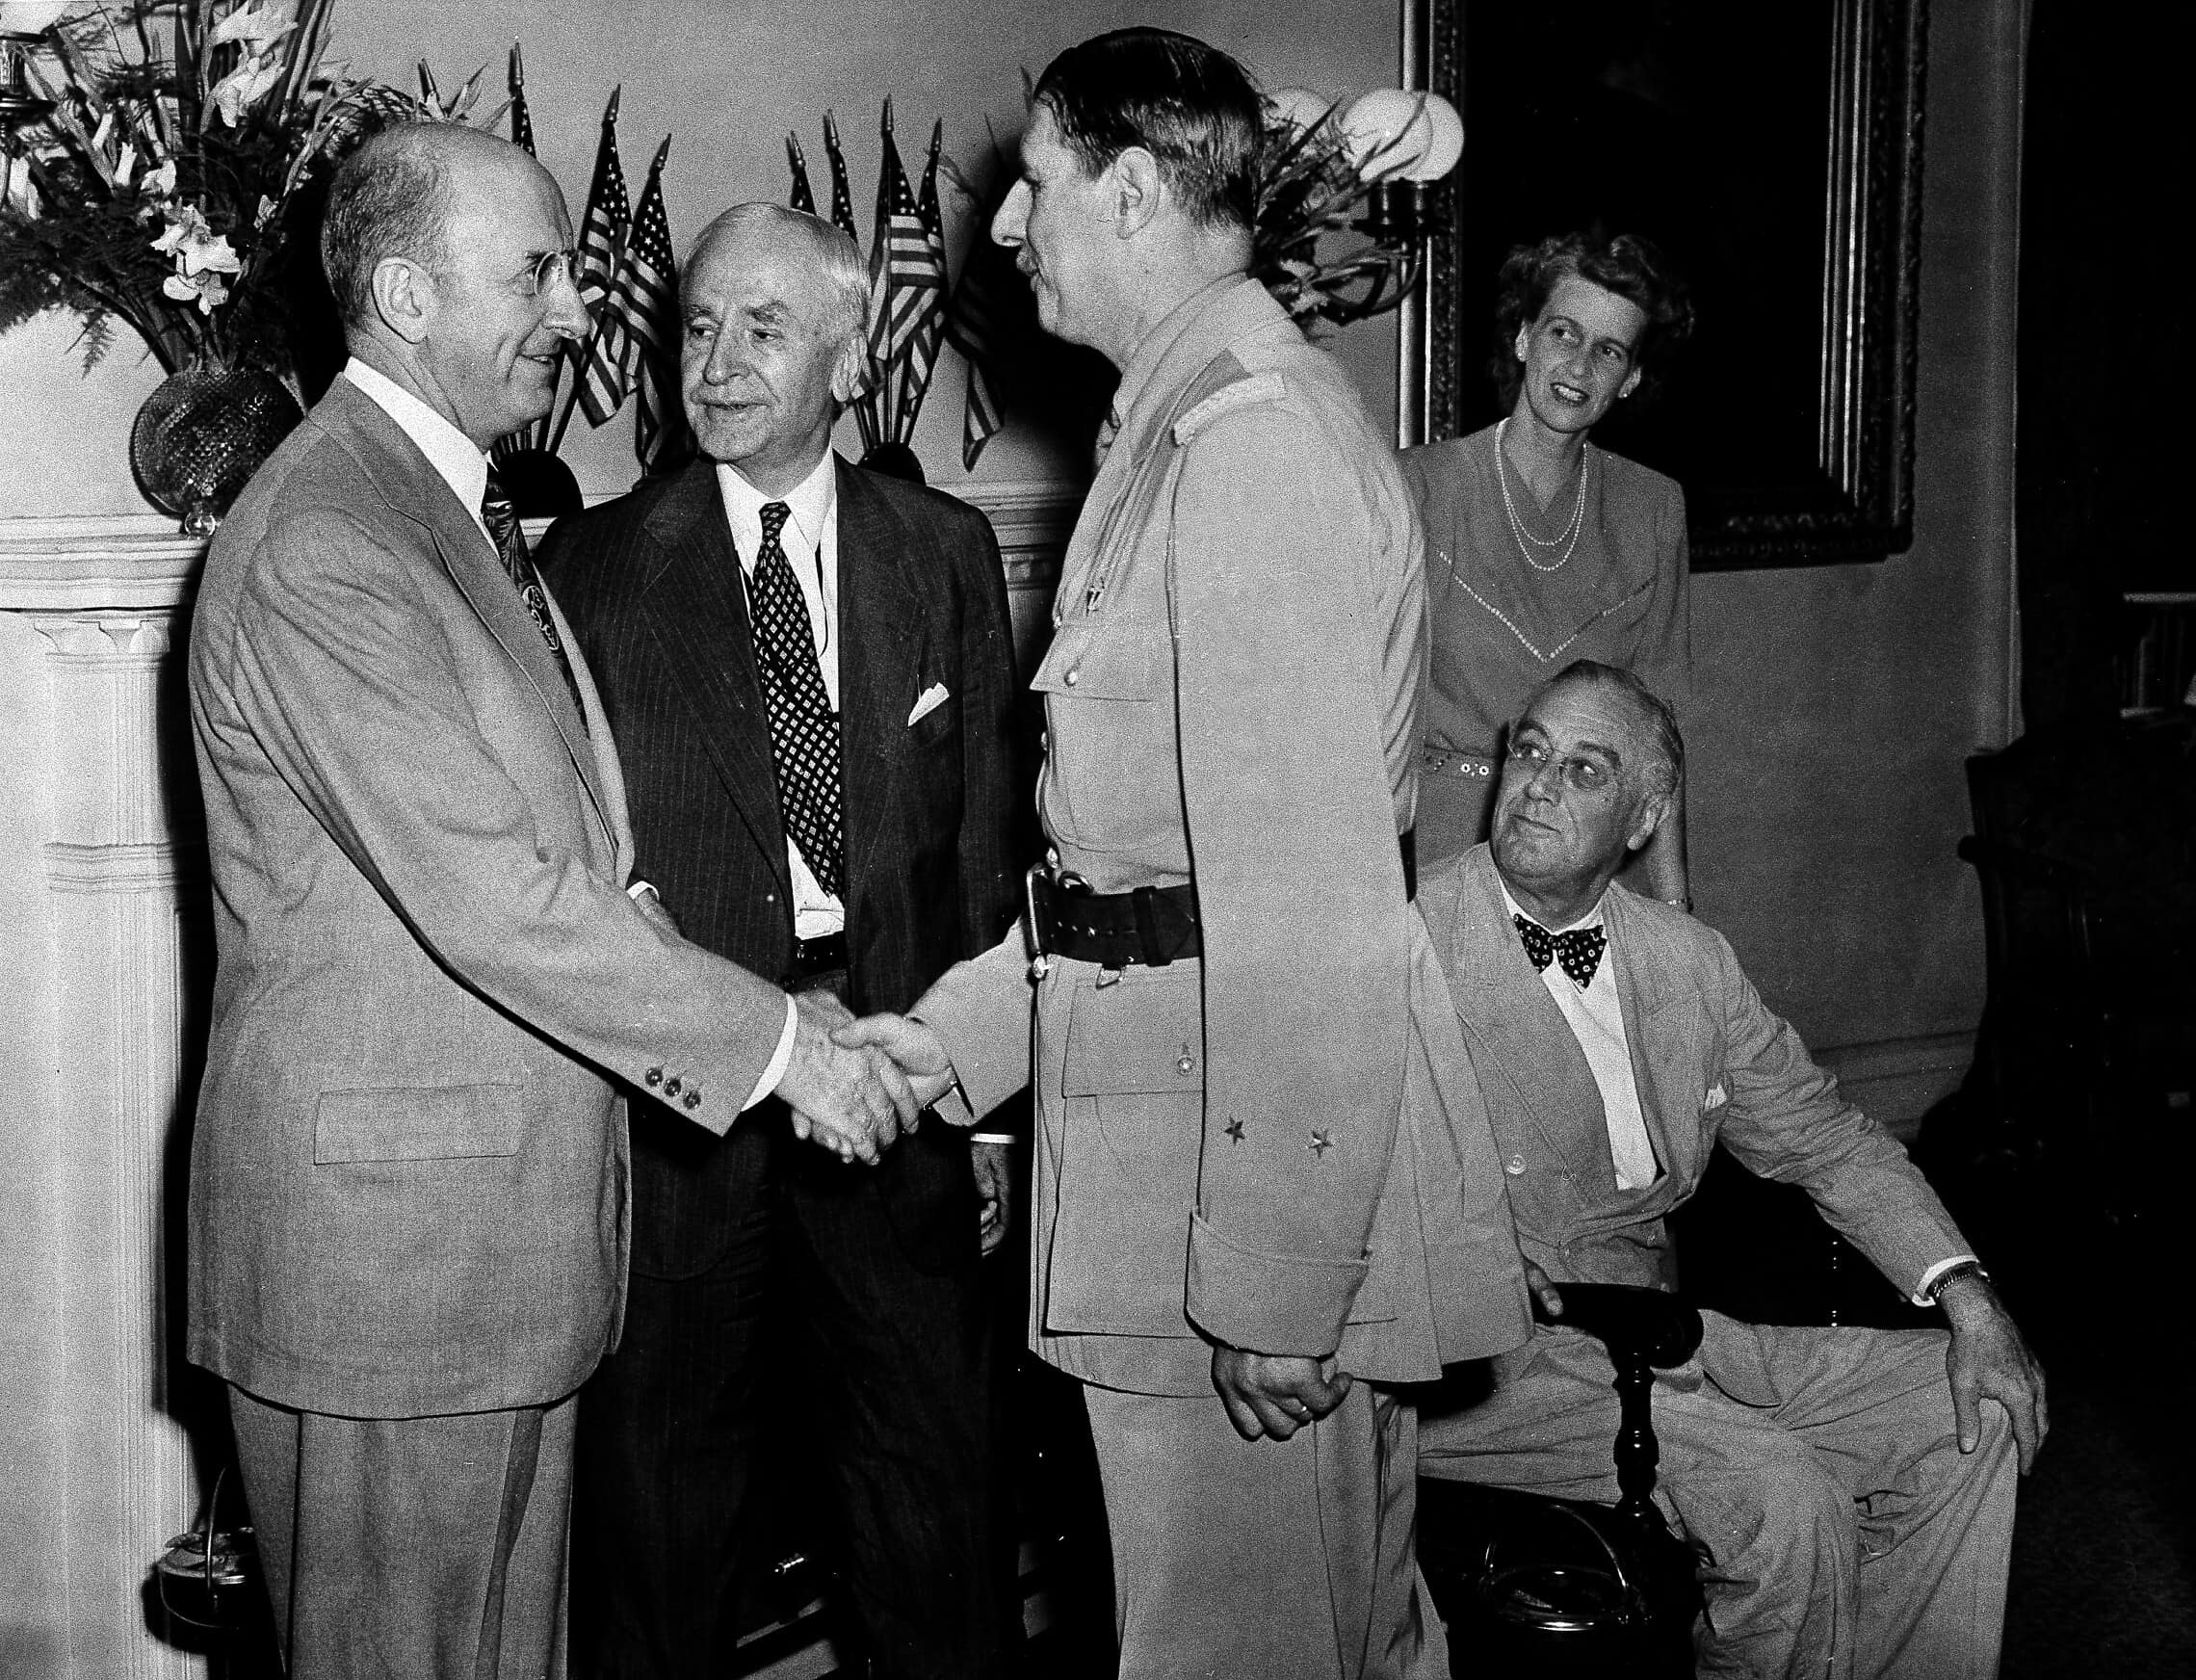 שר האוצר הנרי מורגנטאו לוחץ יד עם נשיא צרפת שארל דה-גול בעת ביקורו בבית הלבן, 6 ביולי 1944 (צילום: AP Photo/Pool)